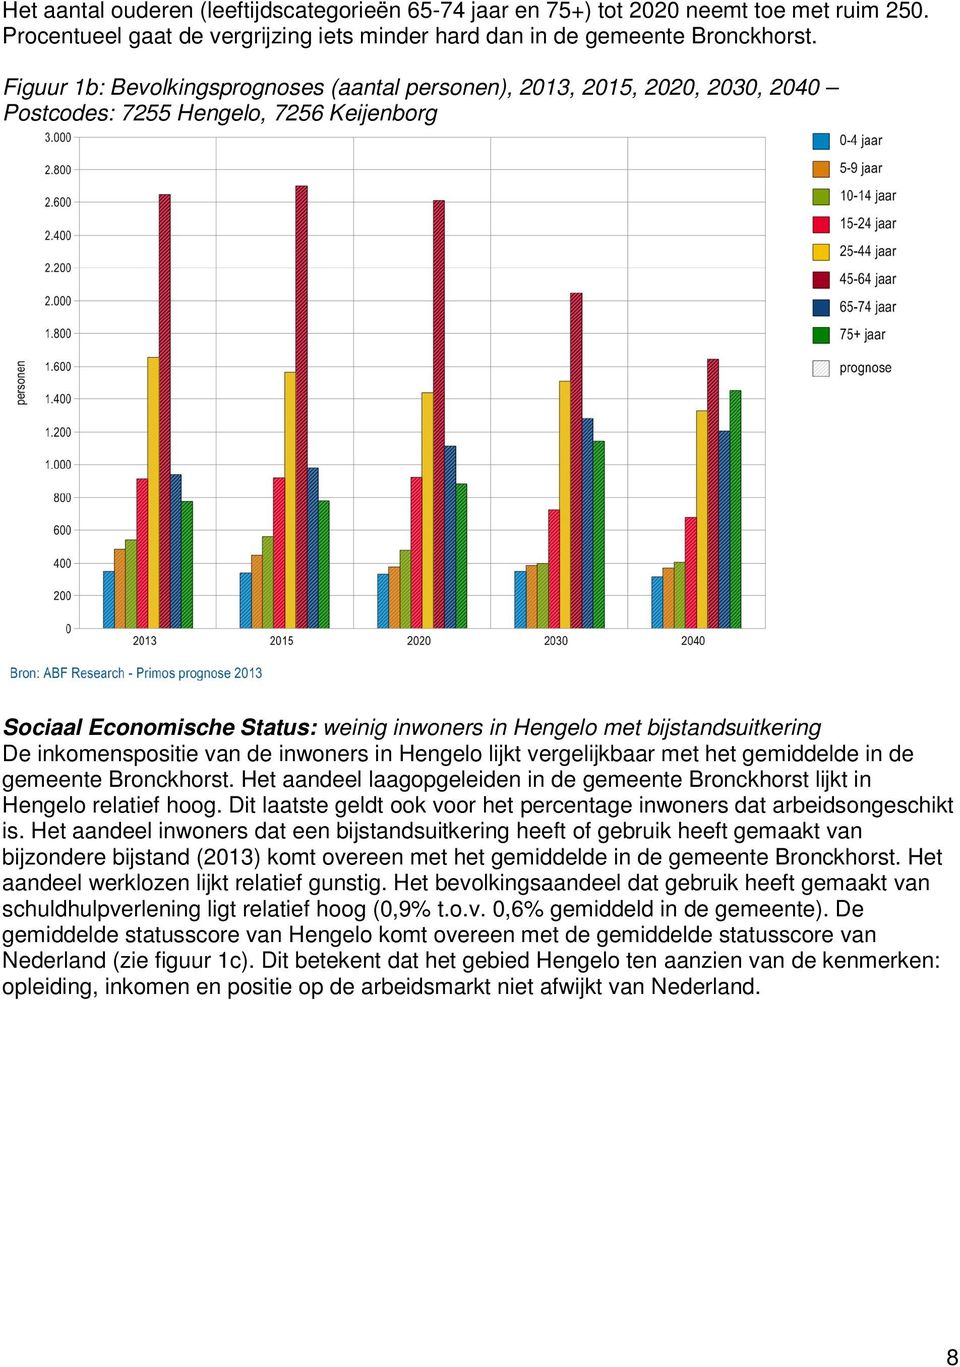 De inkomenspositie van de inwoners in Hengelo lijkt vergelijkbaar met het gemiddelde in de gemeente Bronckhorst. Het aandeel laagopgeleiden in de gemeente Bronckhorst lijkt in Hengelo relatief hoog.